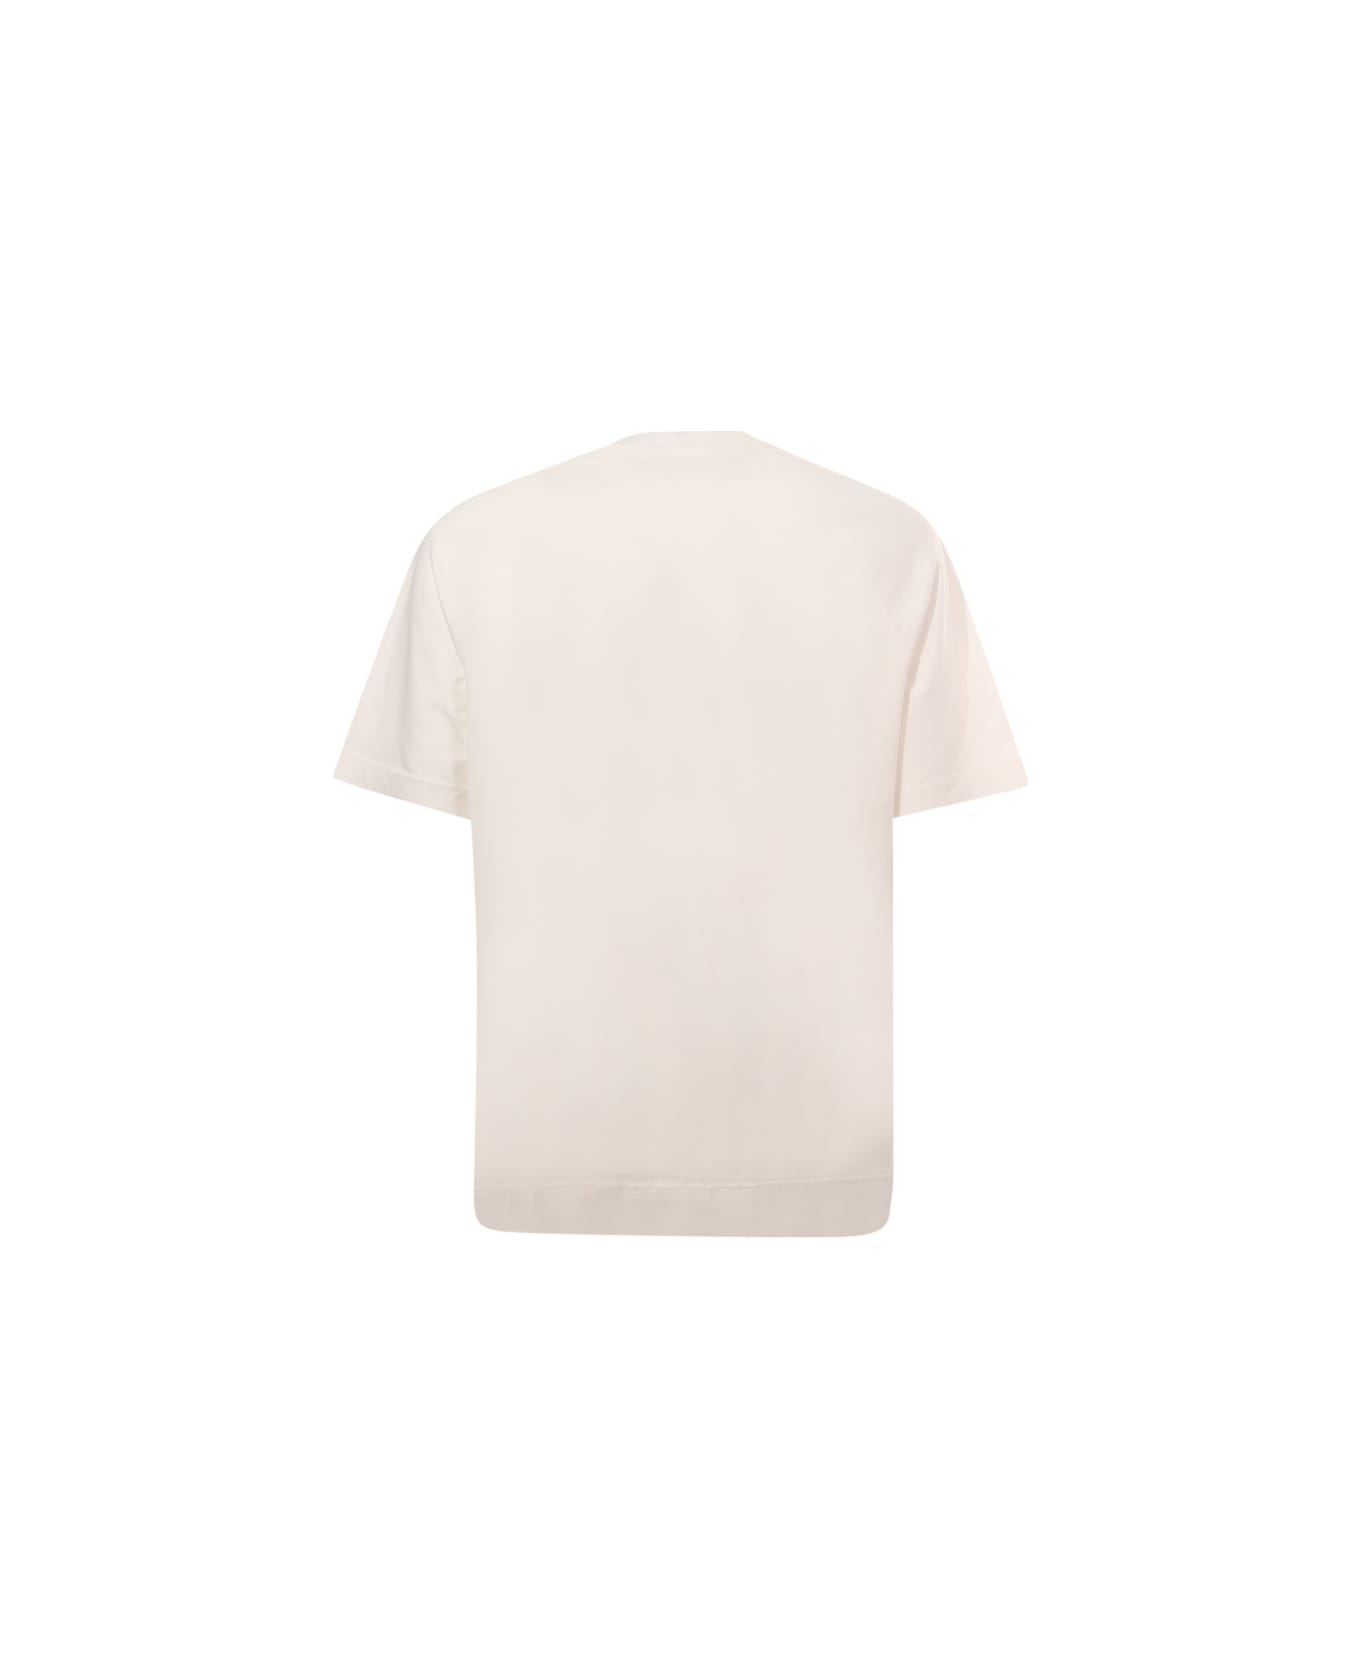 Circolo 1901 Raglan T-shirt - Latte シャツ